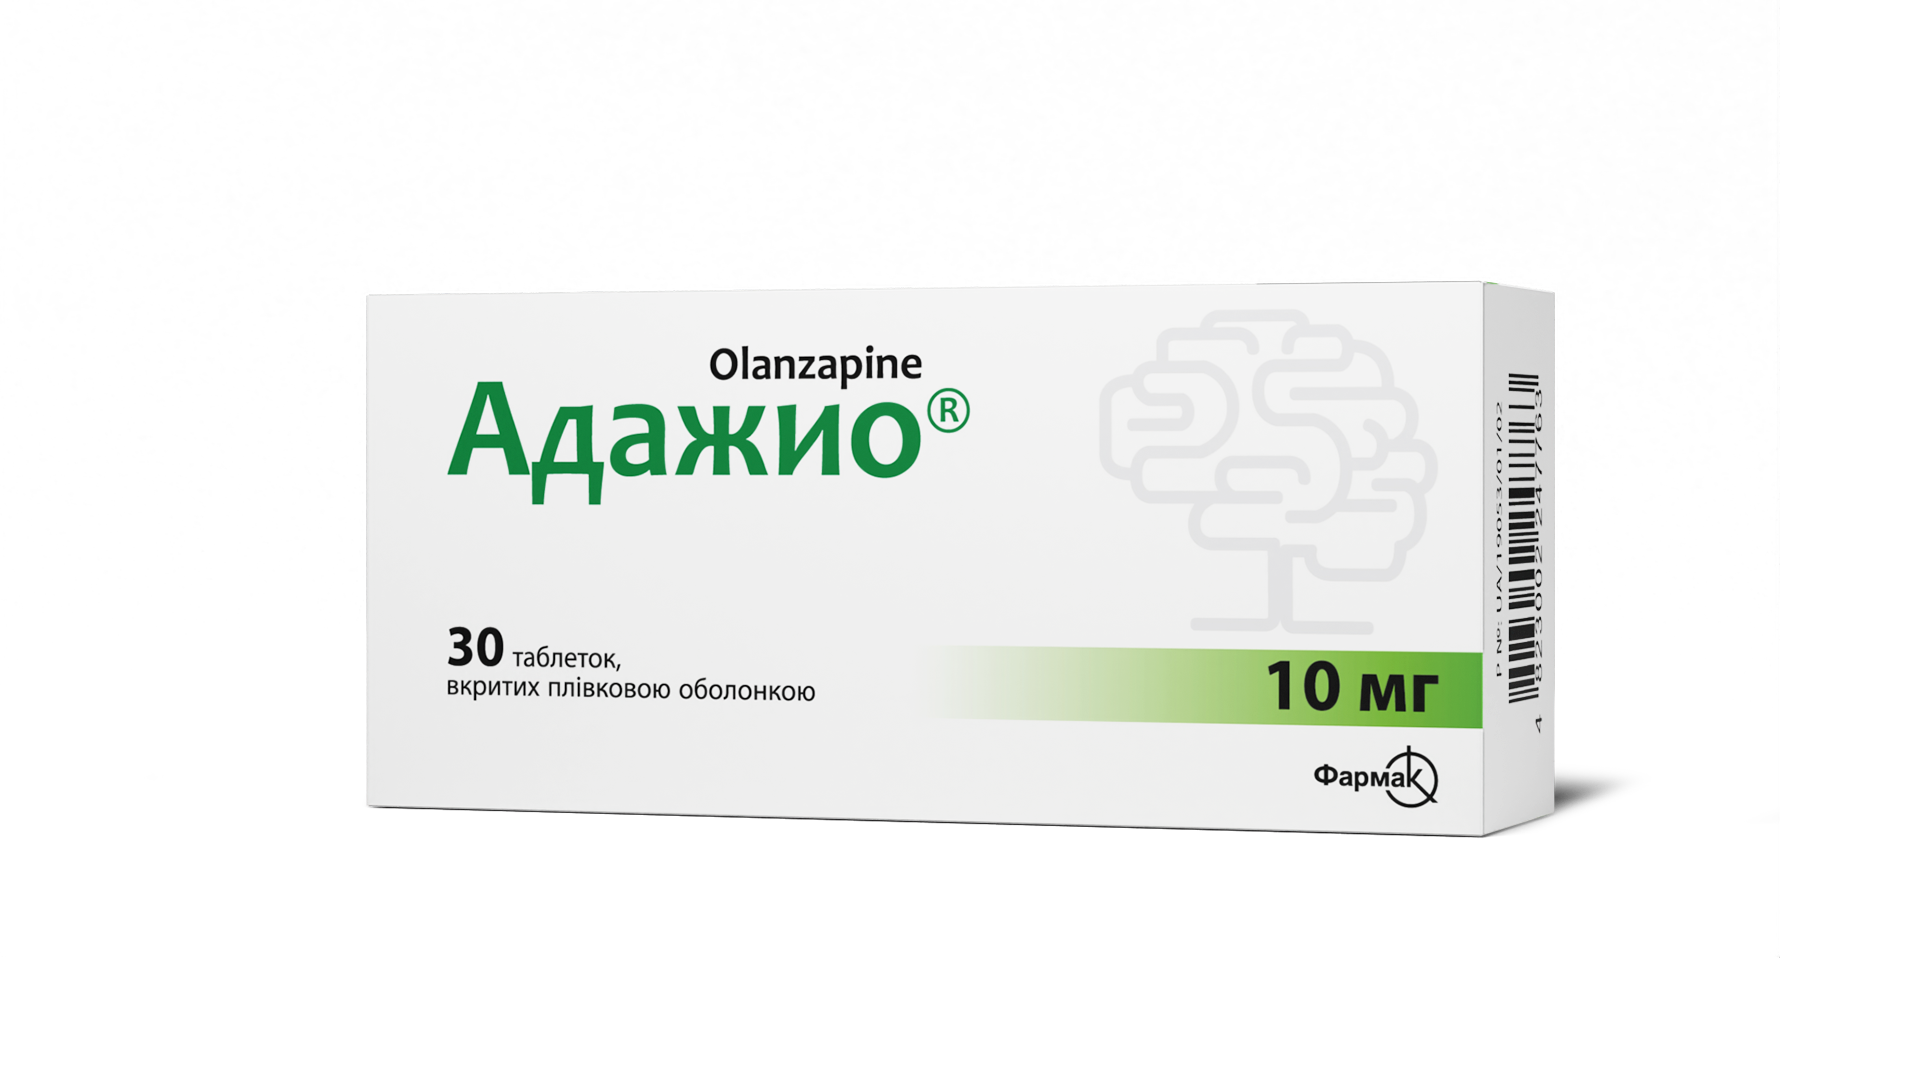 Адажио® 10 мг (3)